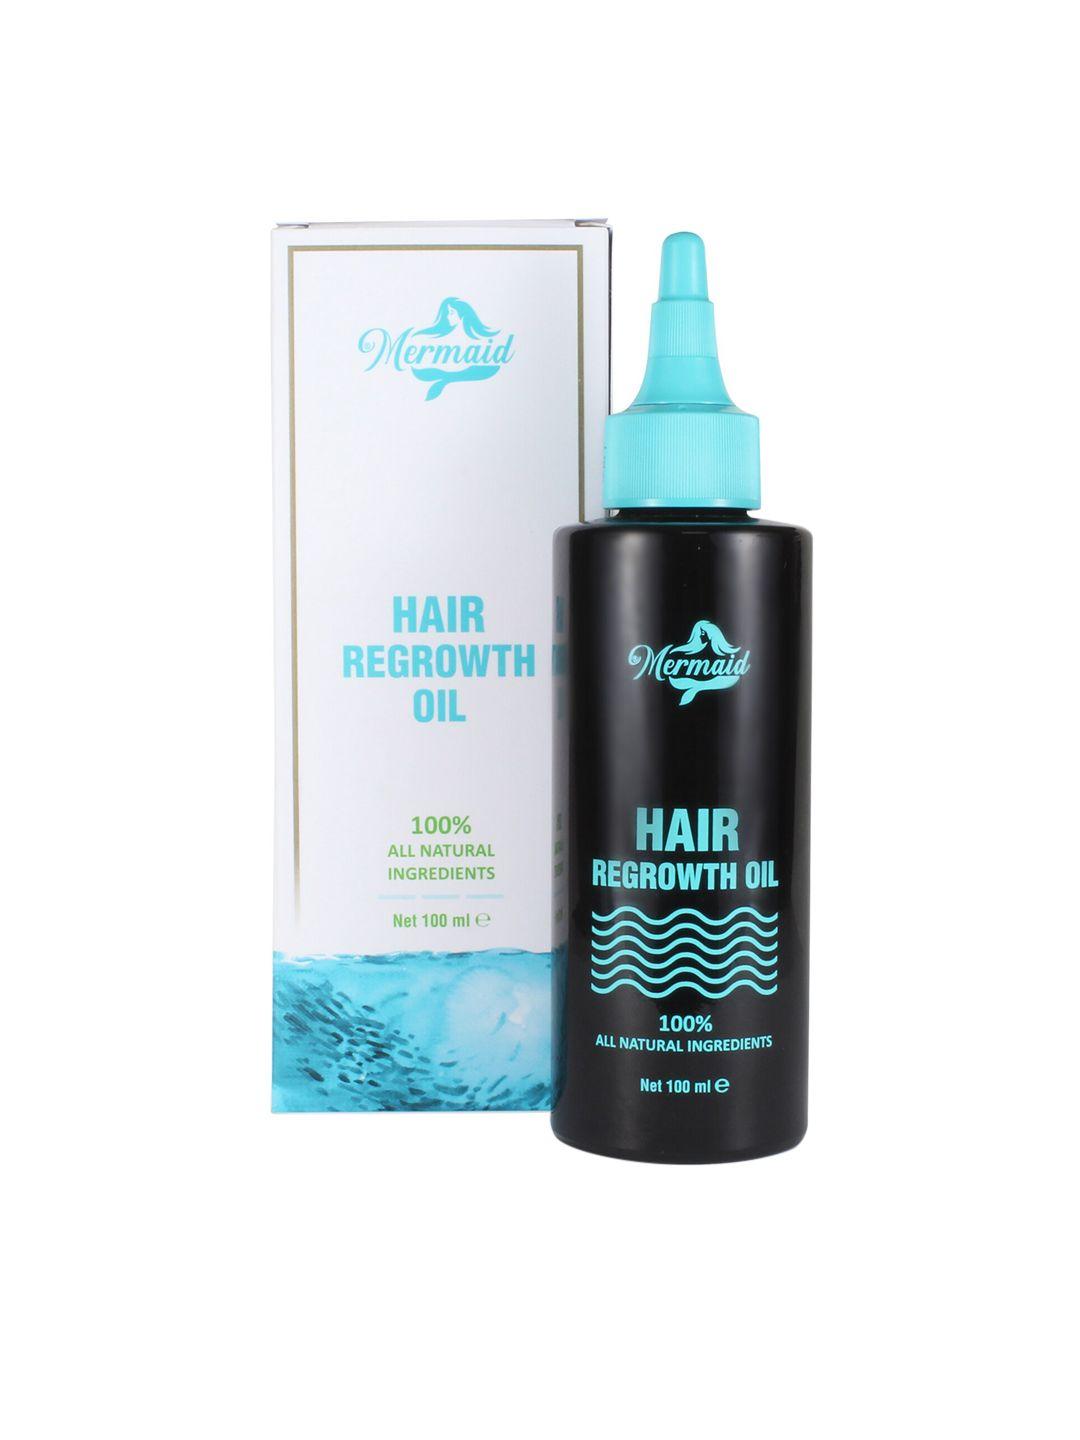 mermaid hair regrowth oil - jatamansi - ylang ylang oil & fucus algae oil - 100 ml